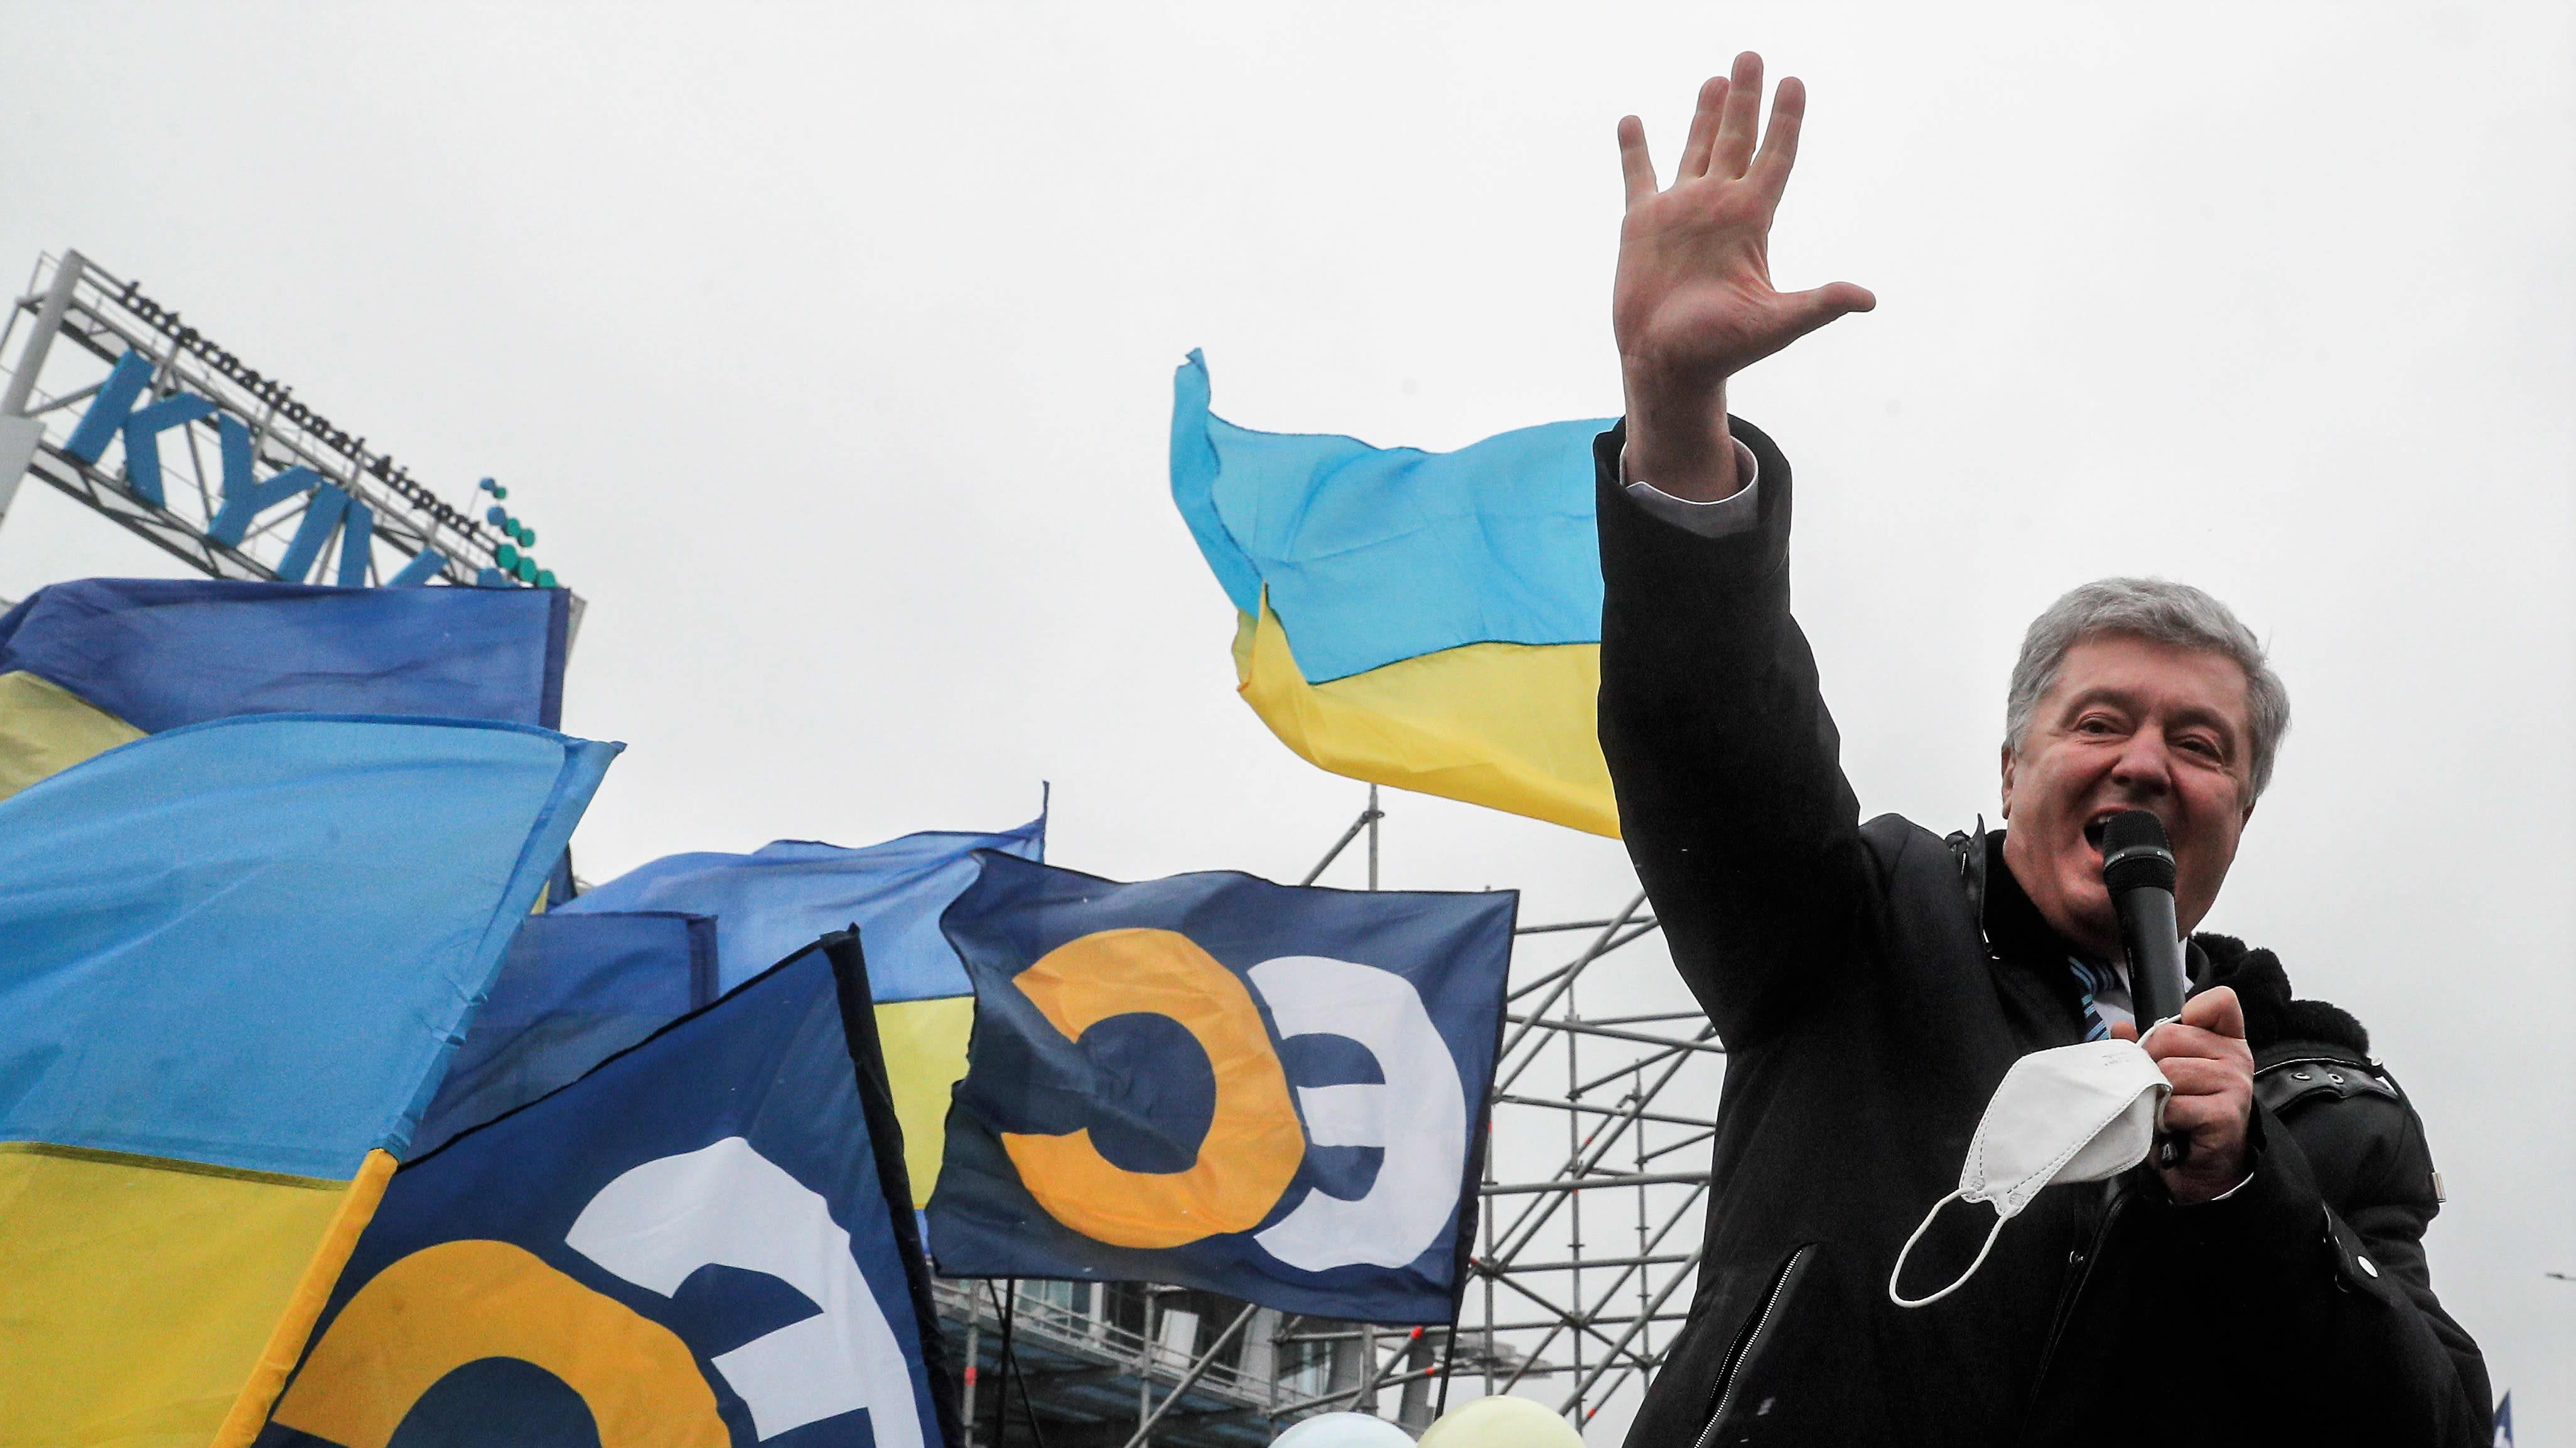 Poroshenko puhuu mikrofoniin ulkona. Hänellä on tumma päällystakki yllään. Poroshenko nostaa oikean kätensä korkealla ilmaan. Taustalla näkyy Ukrainan ja hänen puolueensa Eurooppalaisen solidaarisuuden lippuja sekä Kiovan lentokentän kyltti.